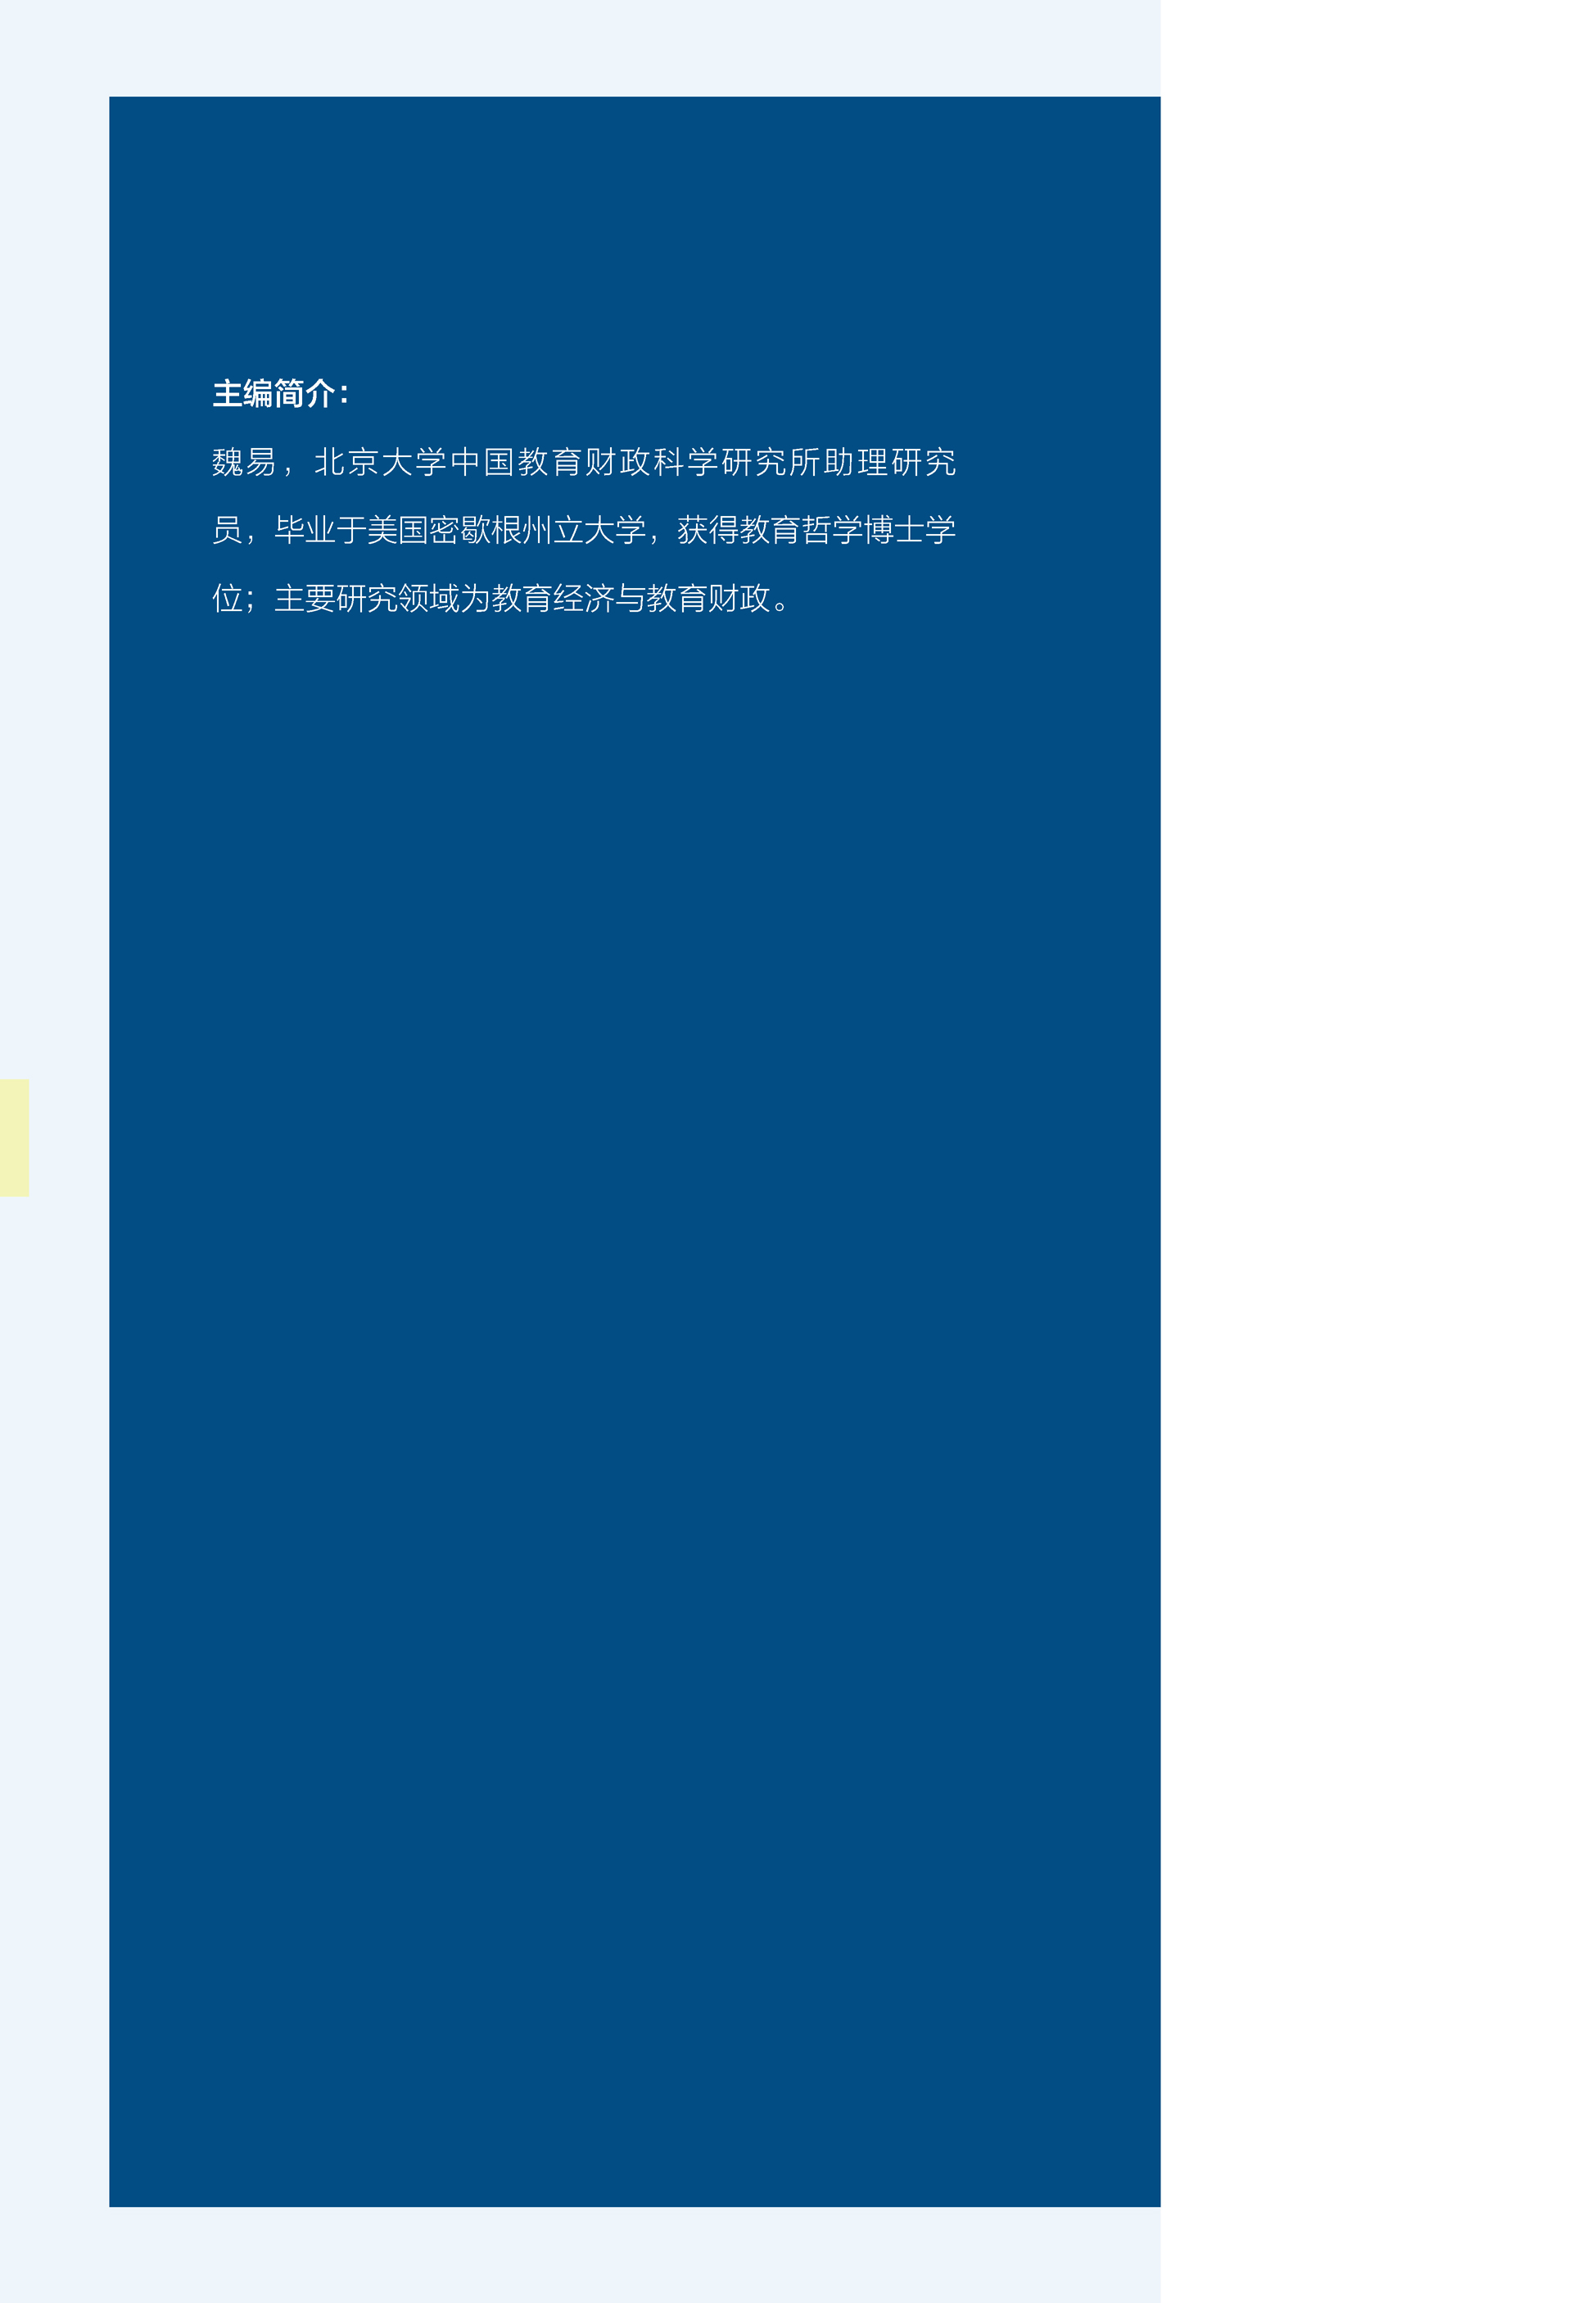 中国教育财政家庭调查报告（2019）pdf/doc/txt格式电子书下载